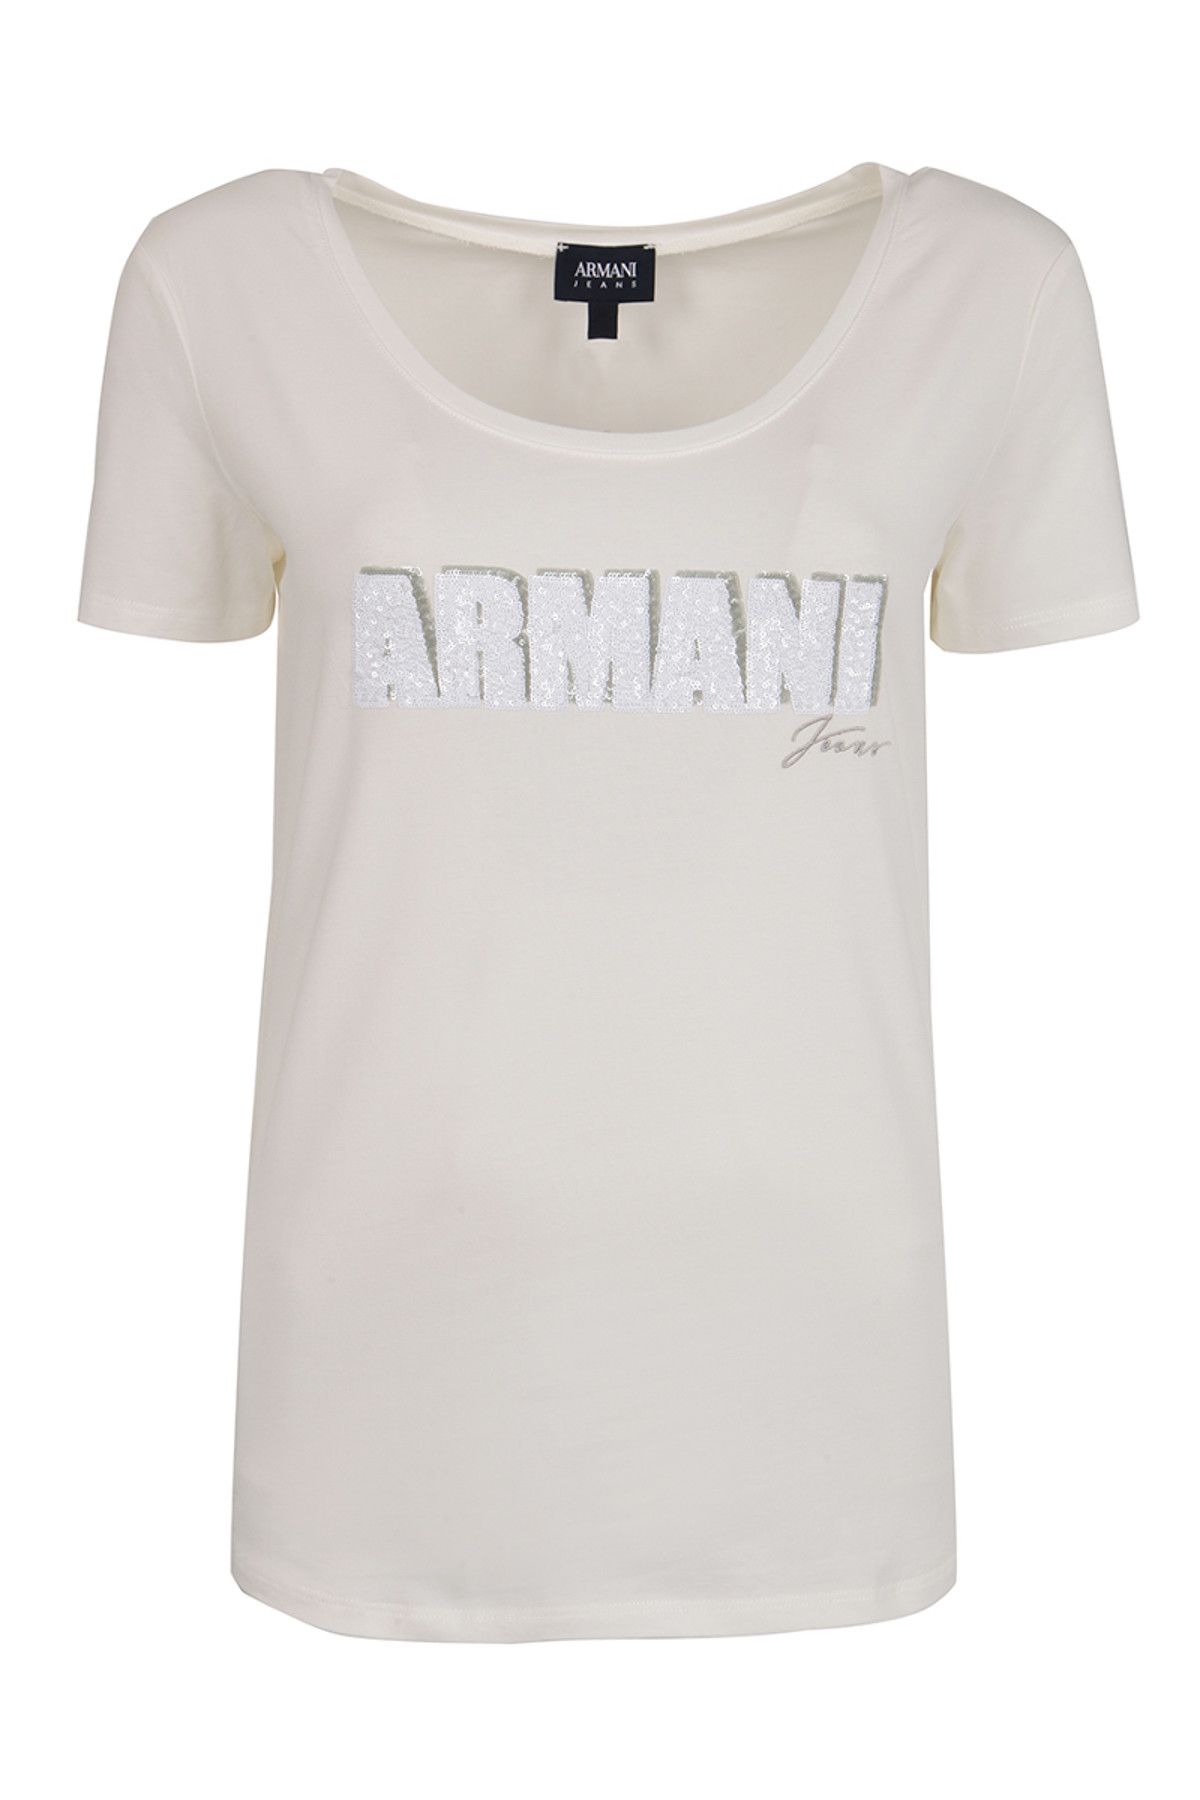 Armani Jeans Beyaz Kadın T-Shirt